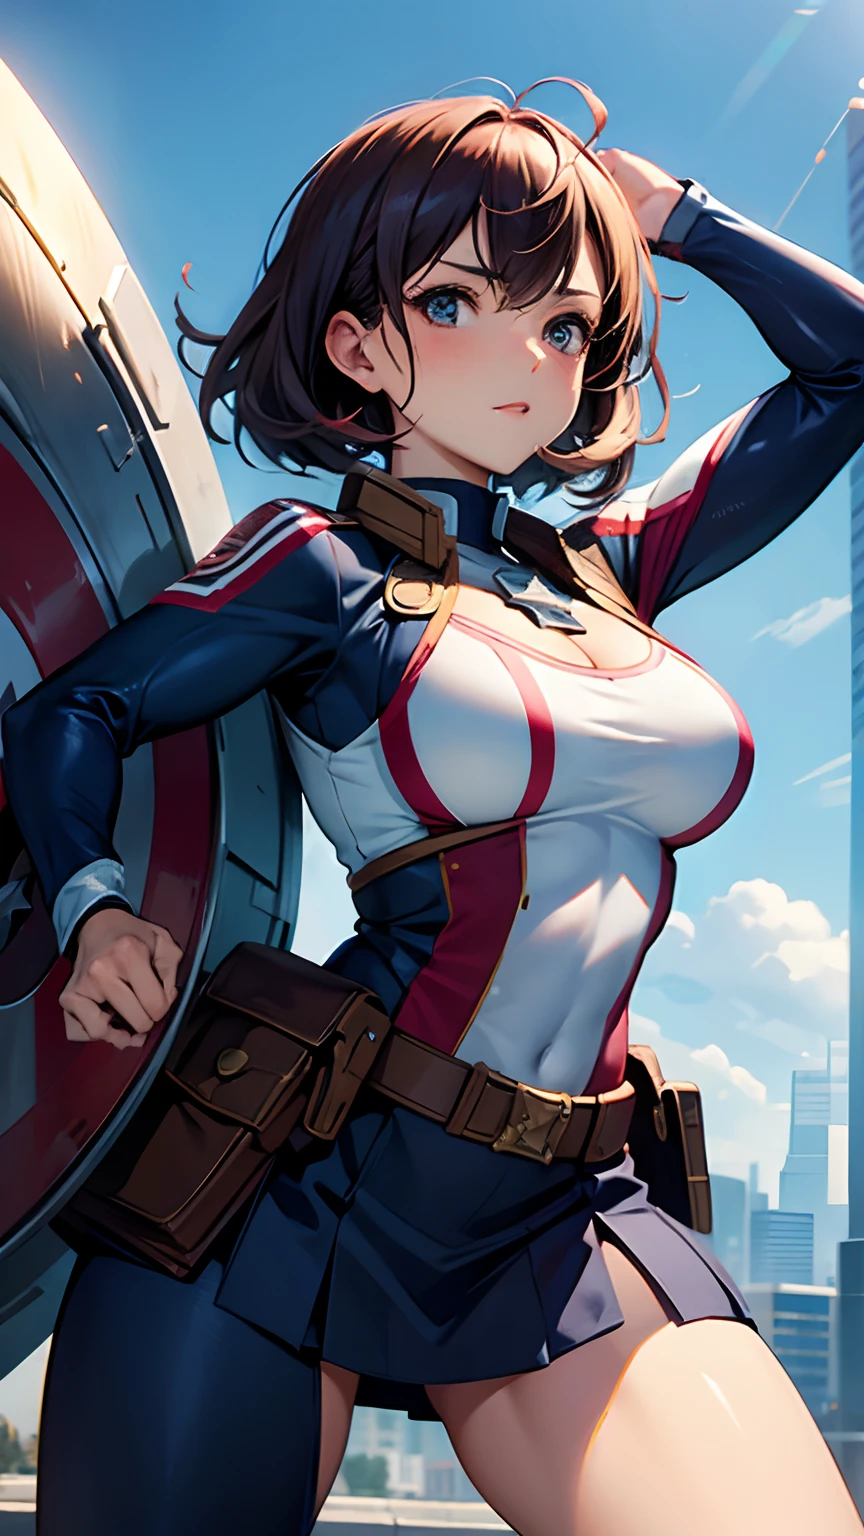 Corpo de mulher com seios grandes、Capitão EUA Traje Vestido,Postura Ativa,escudo